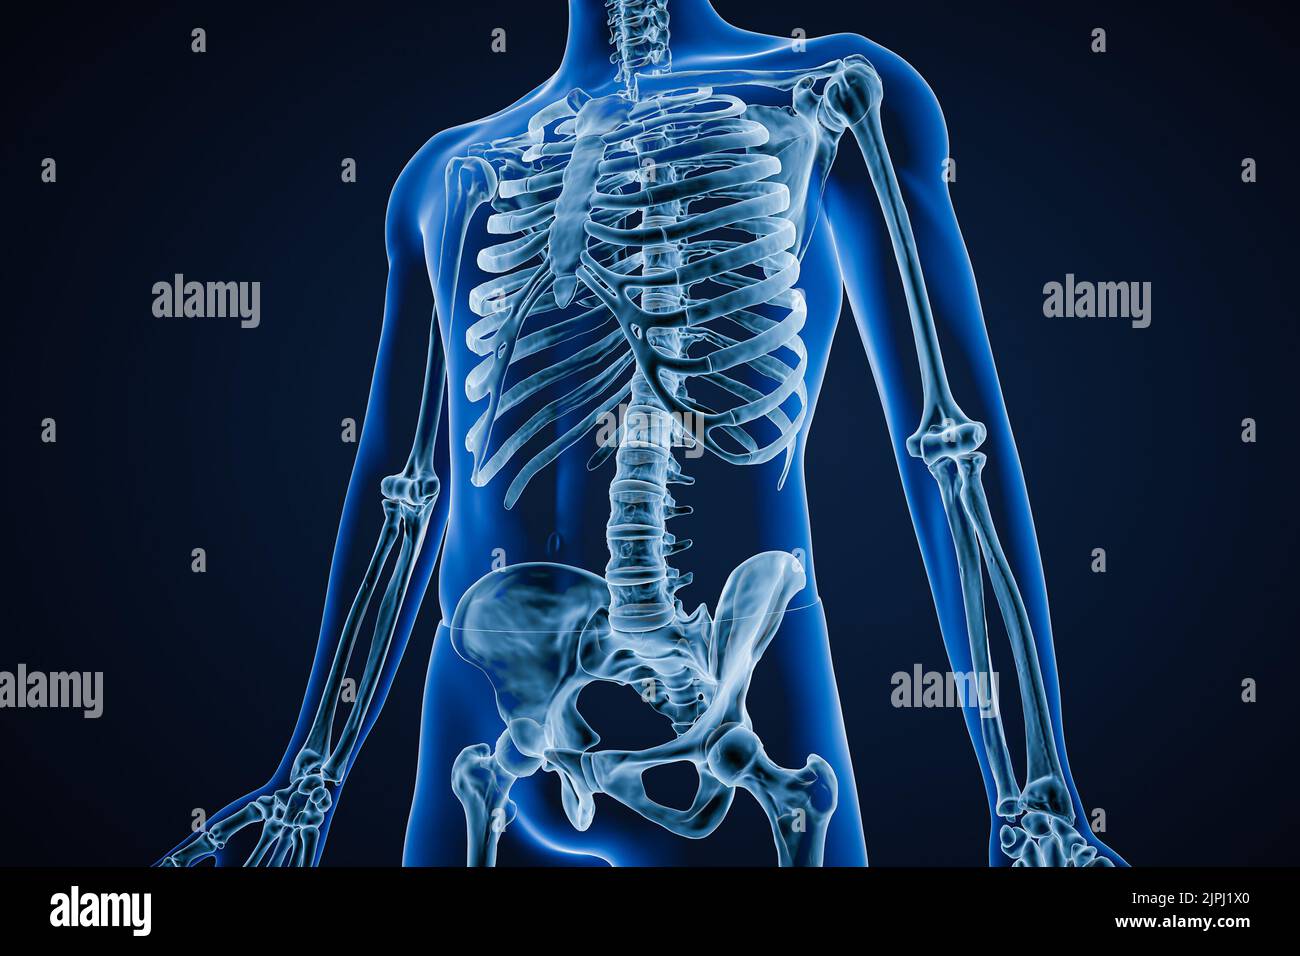 Vista anterior o frontal de la imagen de rayos X del sistema esquelético humano preciso o esqueleto con contornos del cuerpo masculino adulto sobre fondo azul 3D que representa el illus Foto de stock